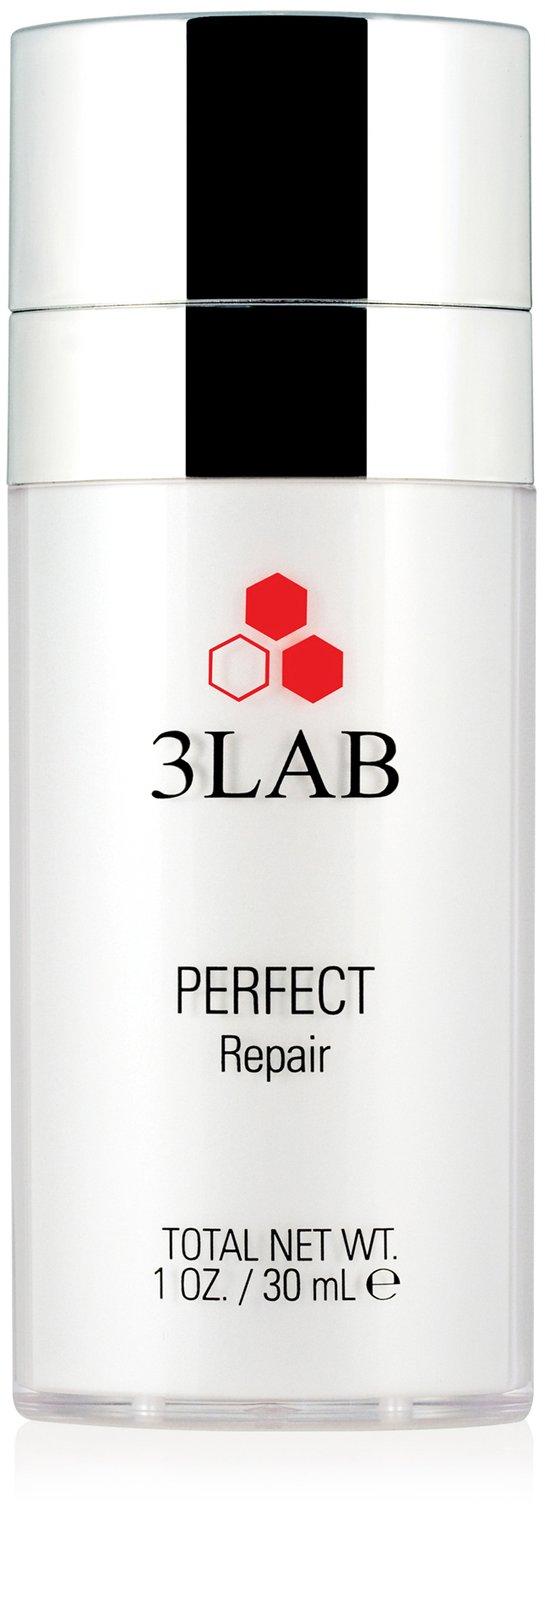 3lab Perfect Repair